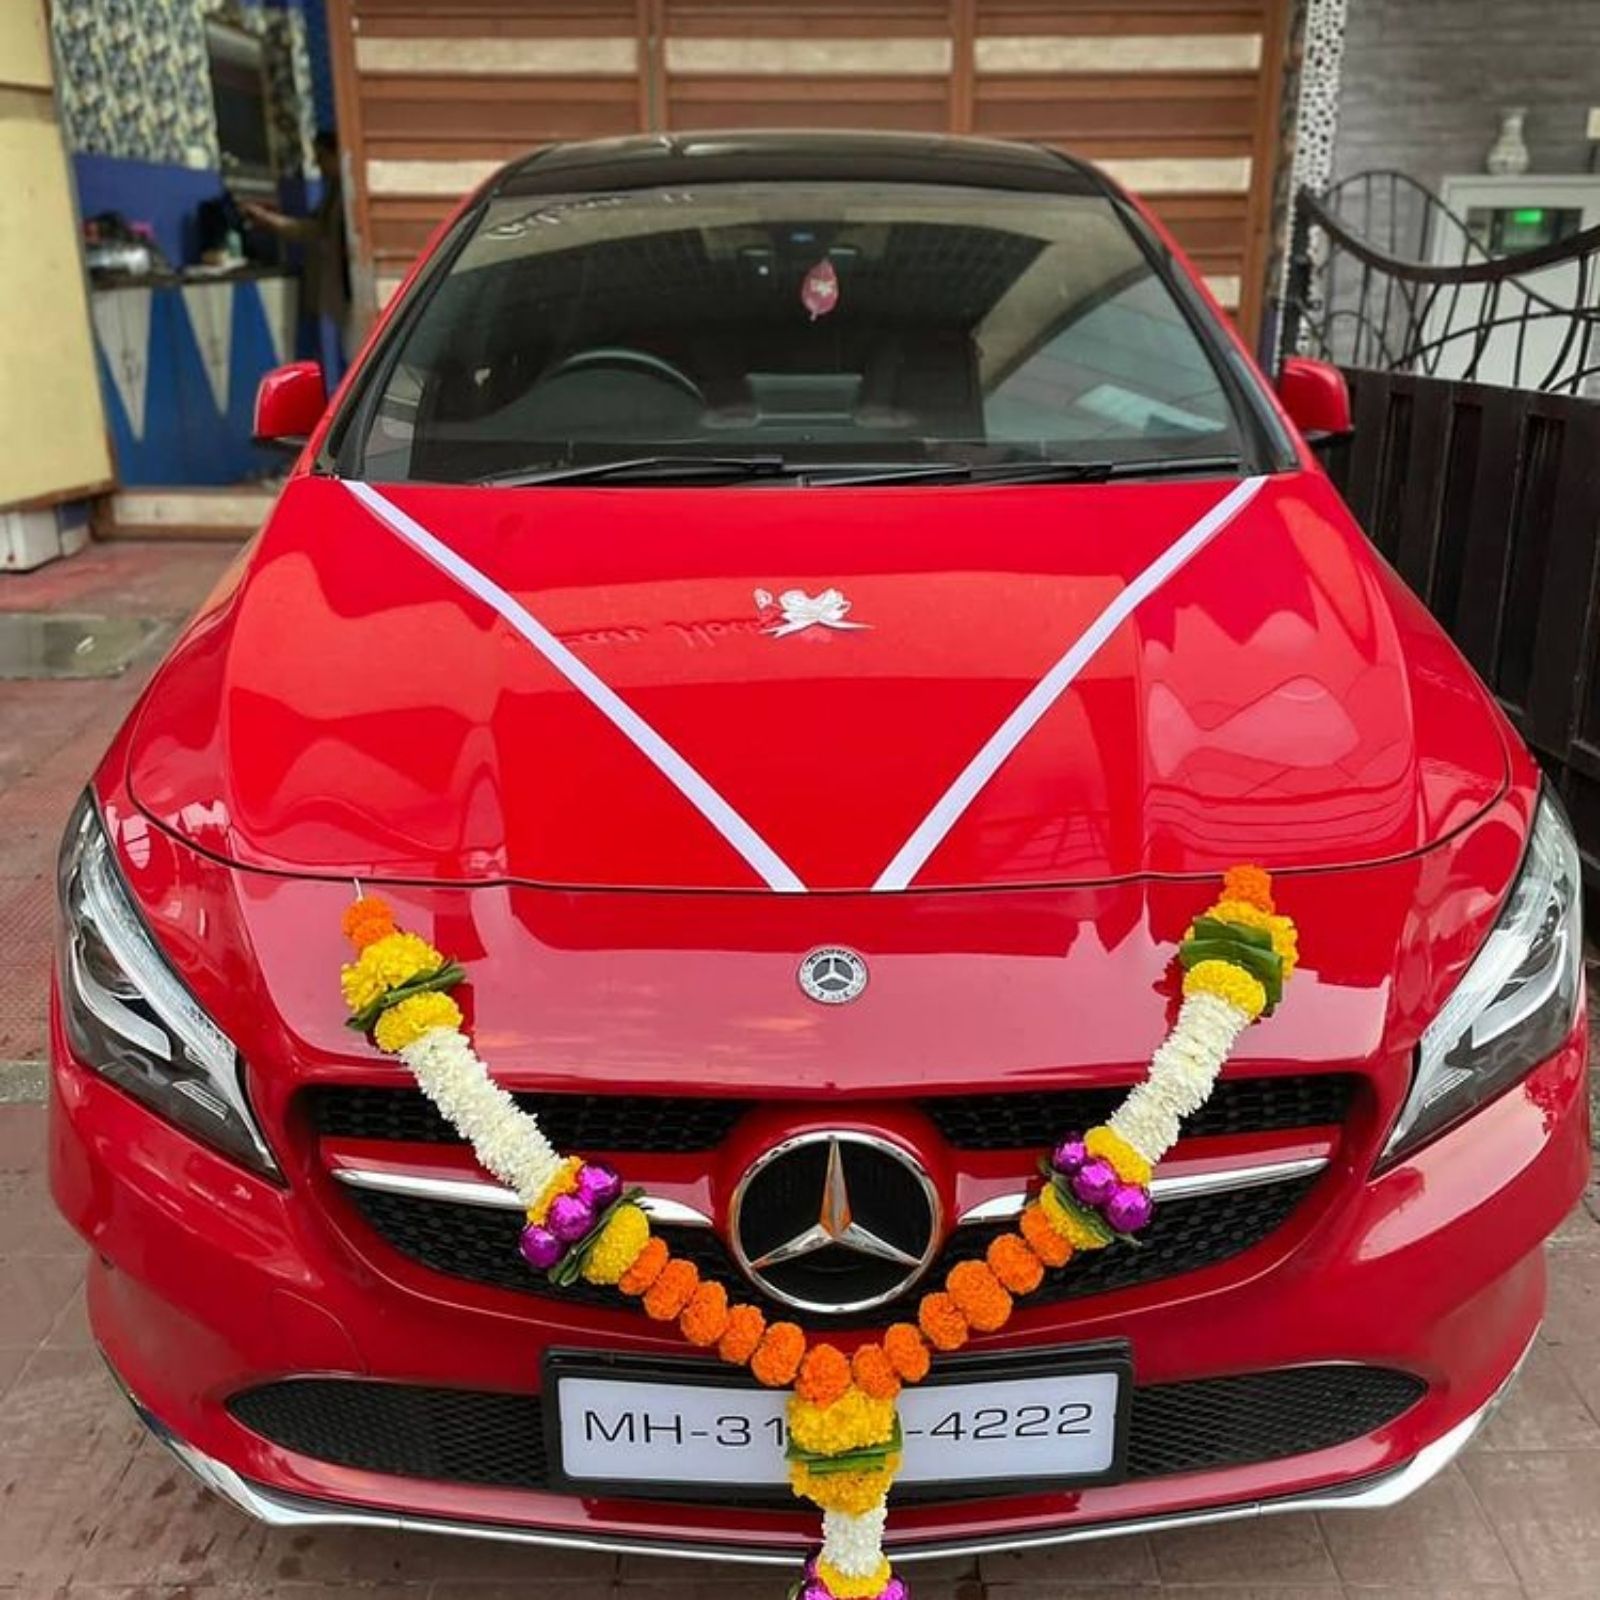  भोजपुरी क्वीन रानी चटर्जी (Rani chatterjee) को भी लग्जरी गाड़ियों का शौक है. उन्होंने हाल ही में नई मर्सिडीज रेड कलर में खरीदी है. इसकी जानकारी उन्होंने इंस्टाग्राम पर खुद शेयर की थी.